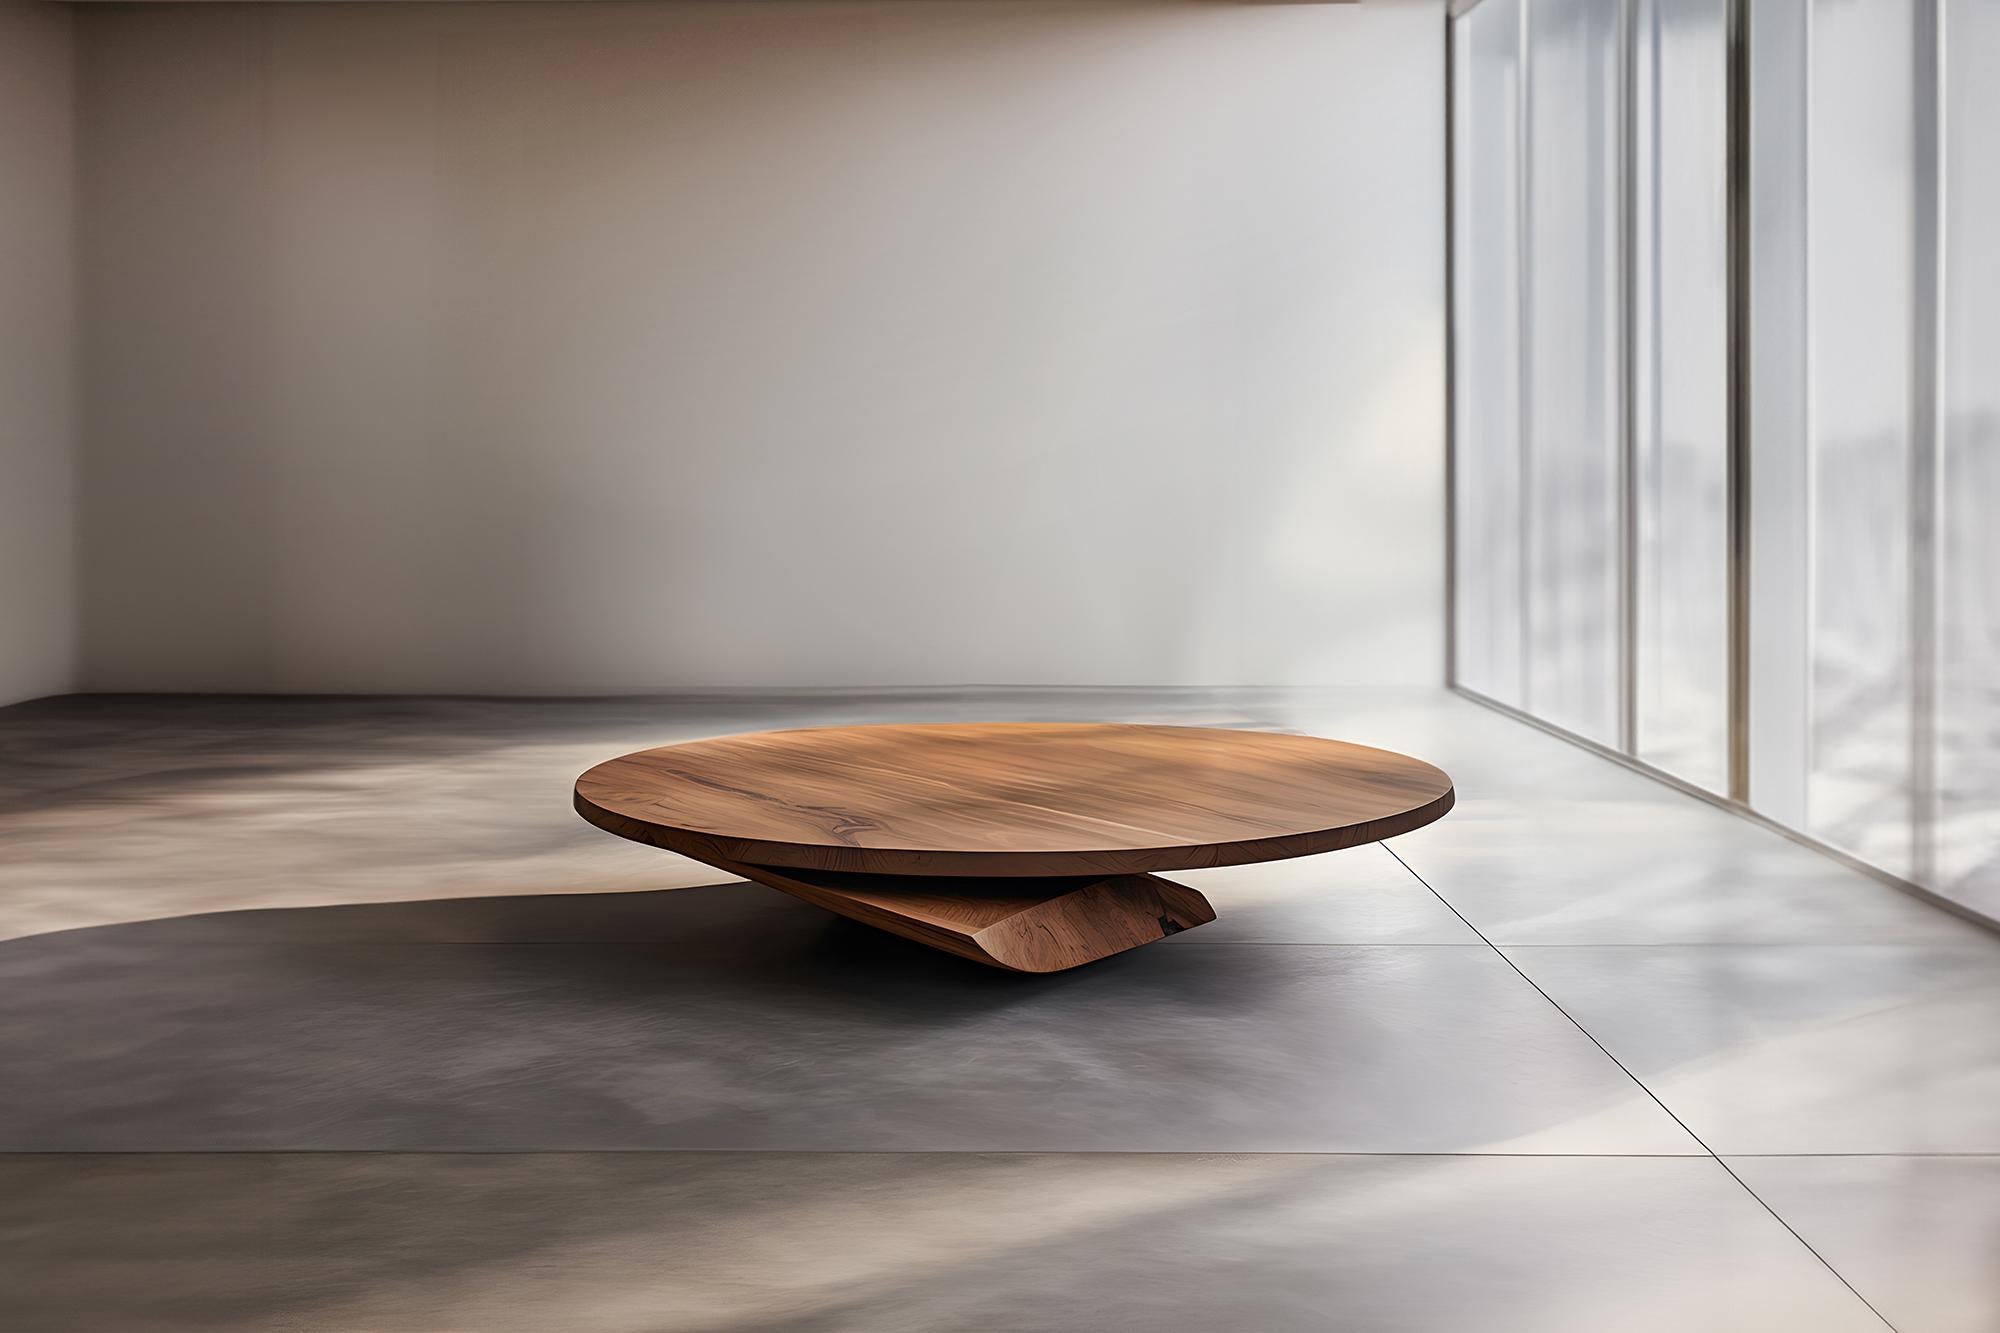 Skulpturaler Couchtisch aus Massivholz, Mitteltisch Solace S51     von Joel Escalona


Die Tischserie Solace, entworfen von Joel Escalona, ist eine Möbelkollektion, die dank ihrer sinnlichen, dichten und unregelmäßigen Formen Ausgewogenheit und